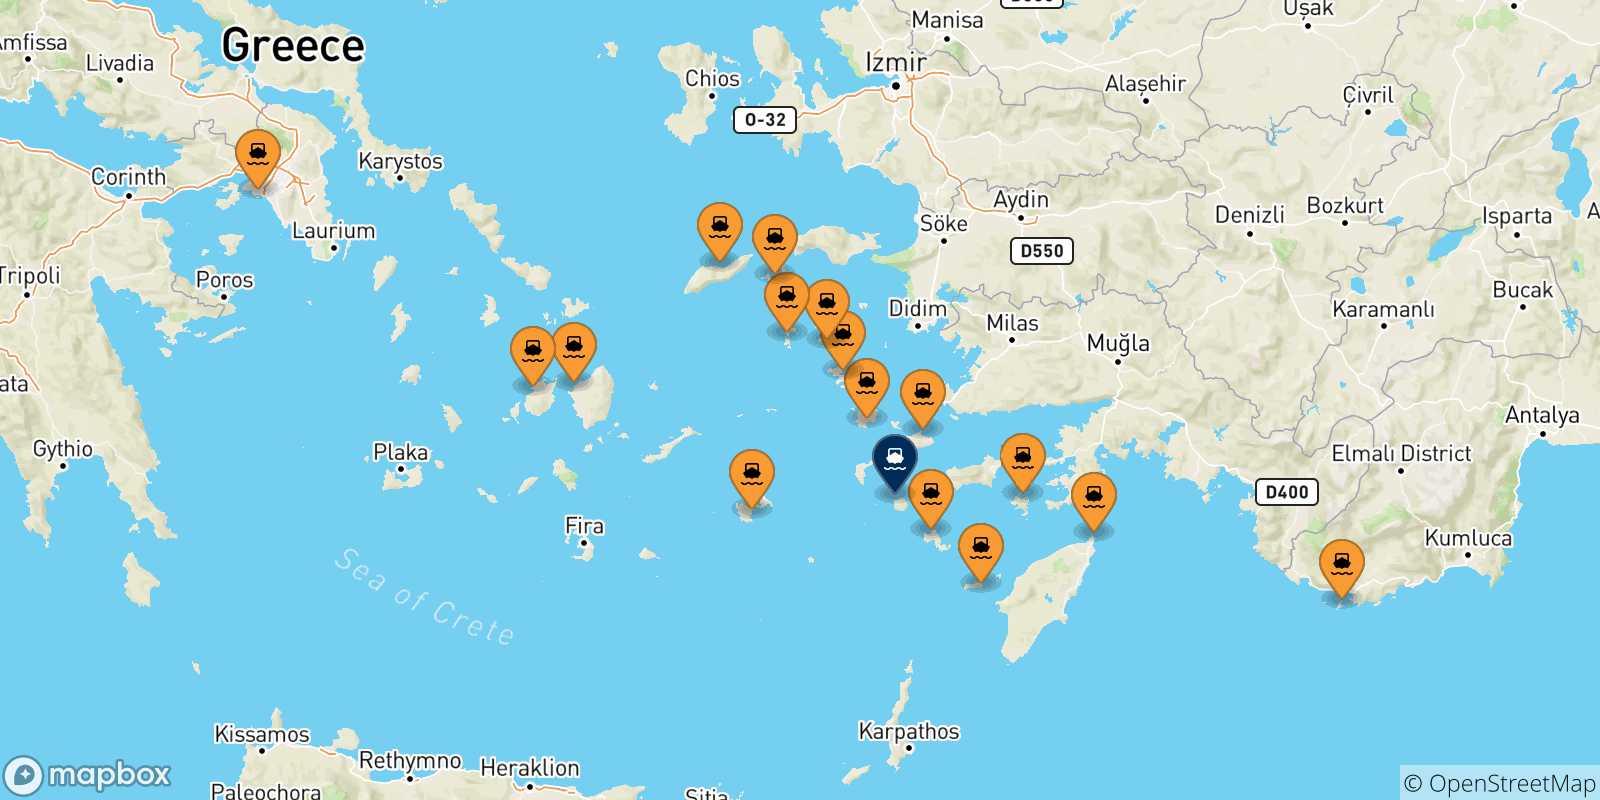 Mappa delle possibili rotte tra la Grecia e Nisyros